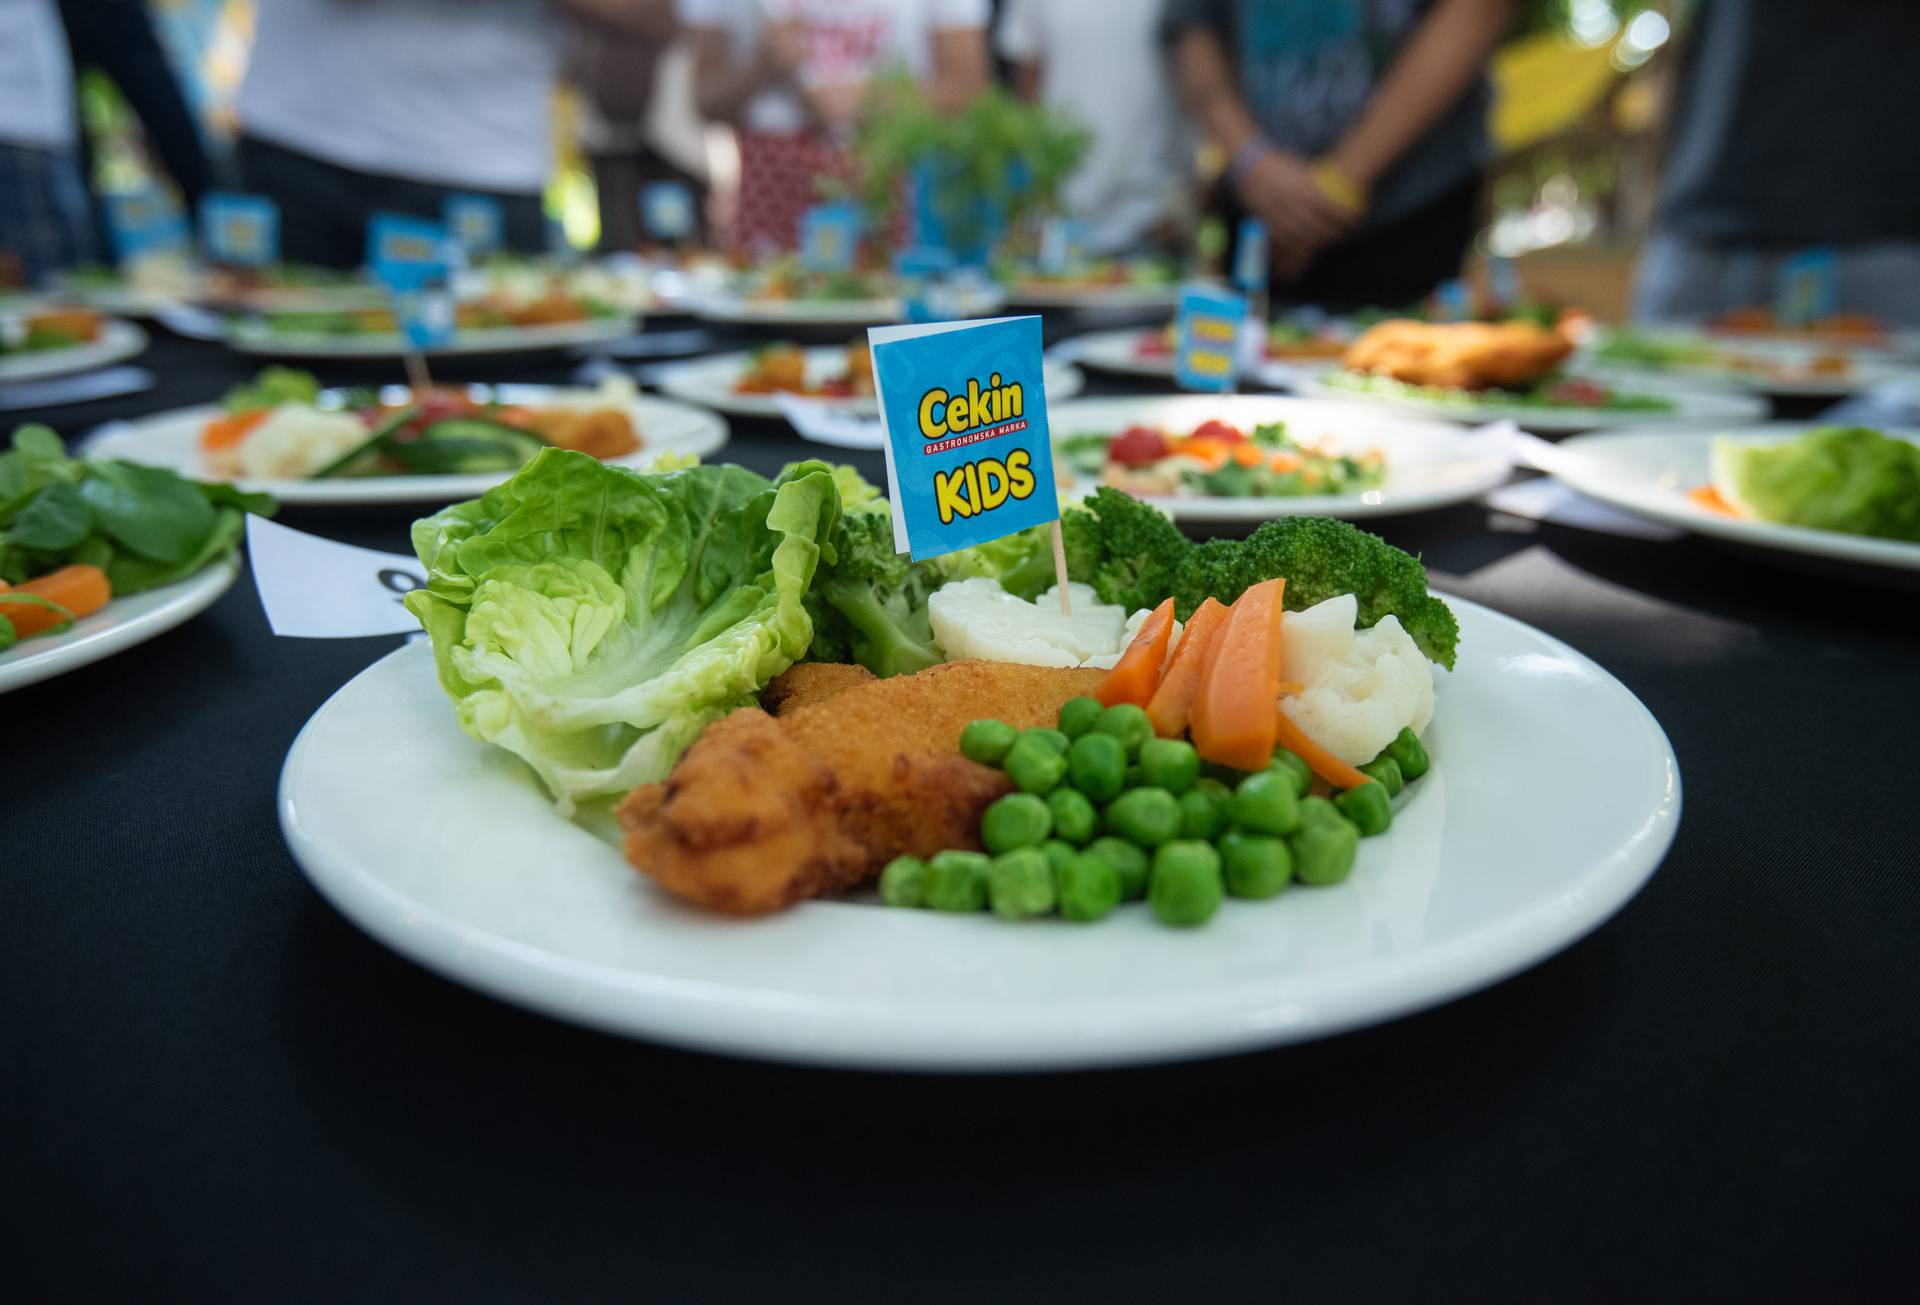 Inspiracija za ručak: Omiljeno jelo svakog školarca dobilo je svoju zdraviju varijantu!